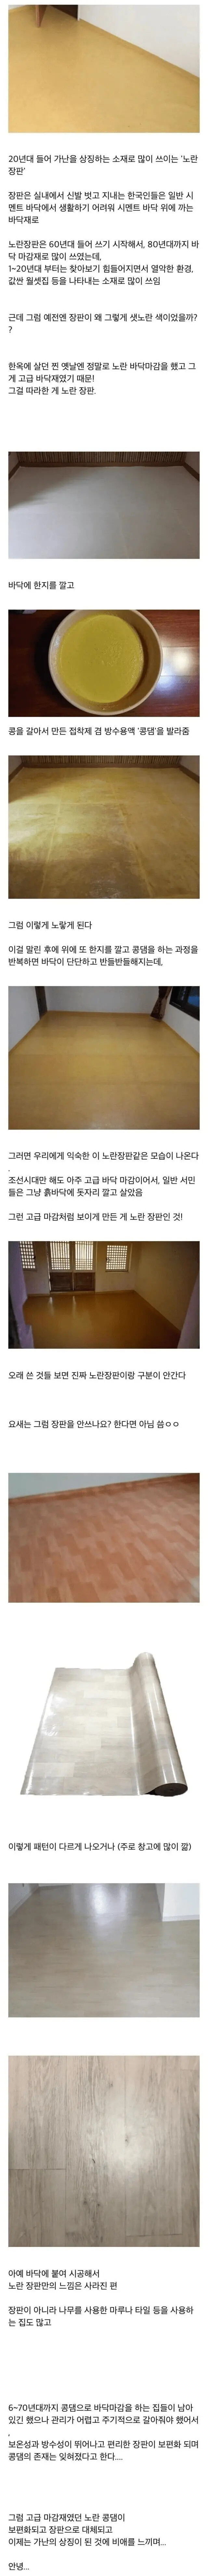 가난의 상징이 된 노란장판의 비밀 | mbong.kr 엠봉